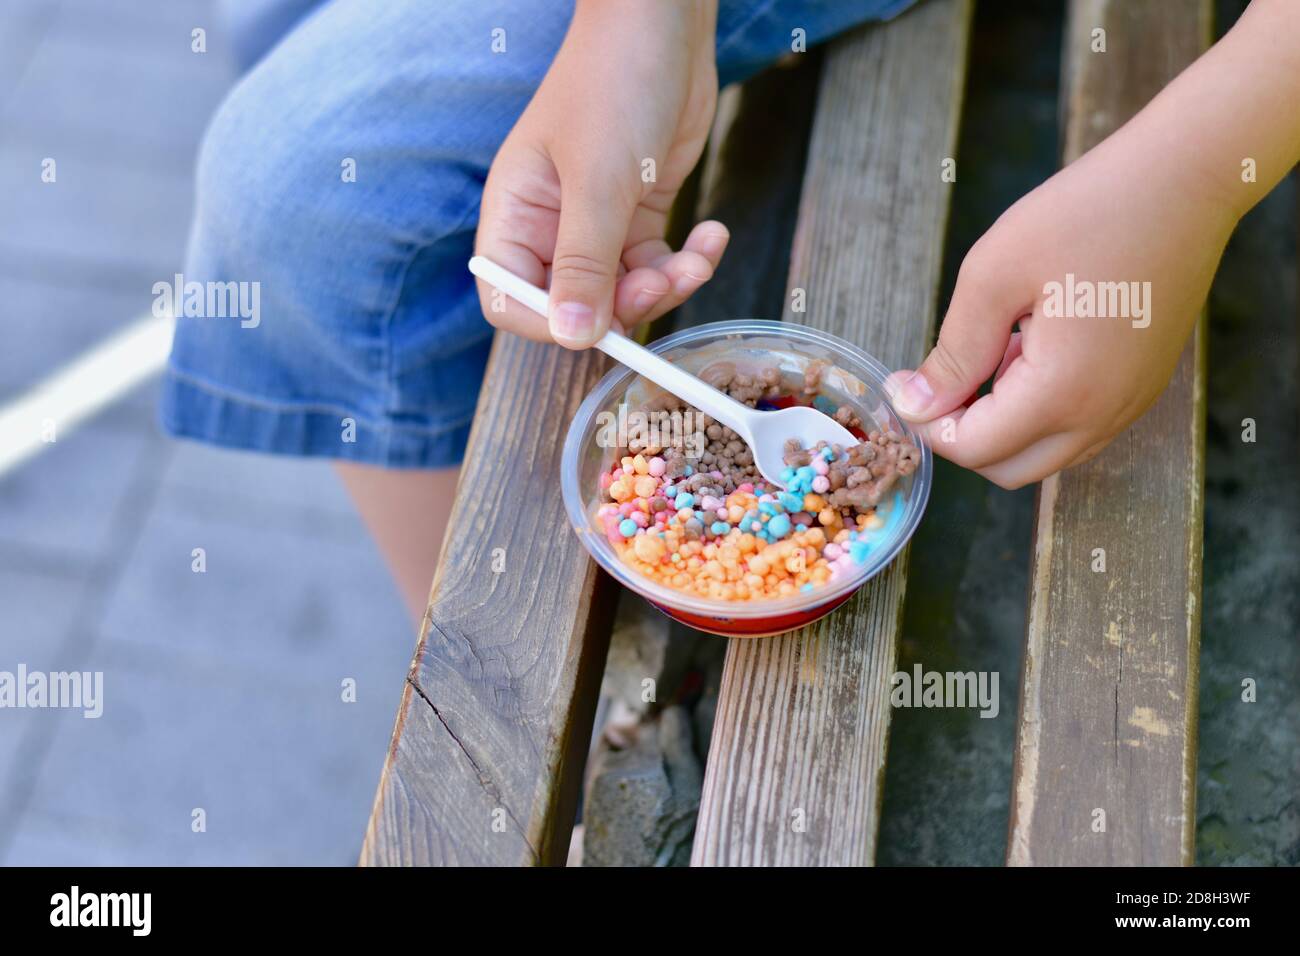 Kinder Hände mit einem Löffel, zum Essen Mini kleine bunte Eiskugeln von  Obst und Schokolade Eis Stockfotografie - Alamy